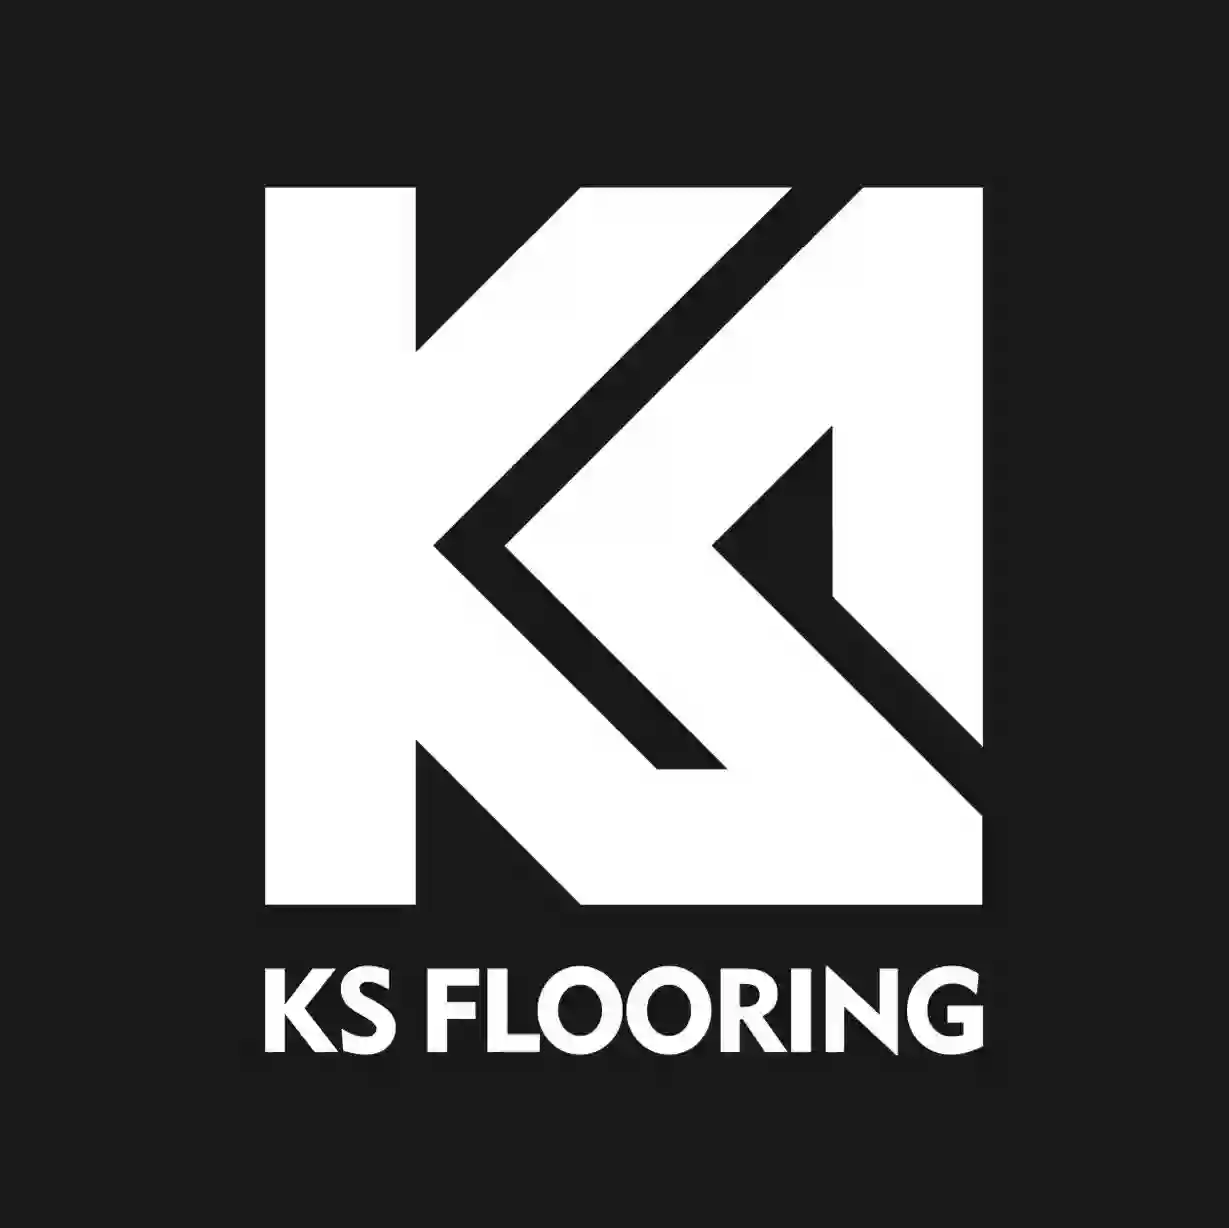 KS Flooring